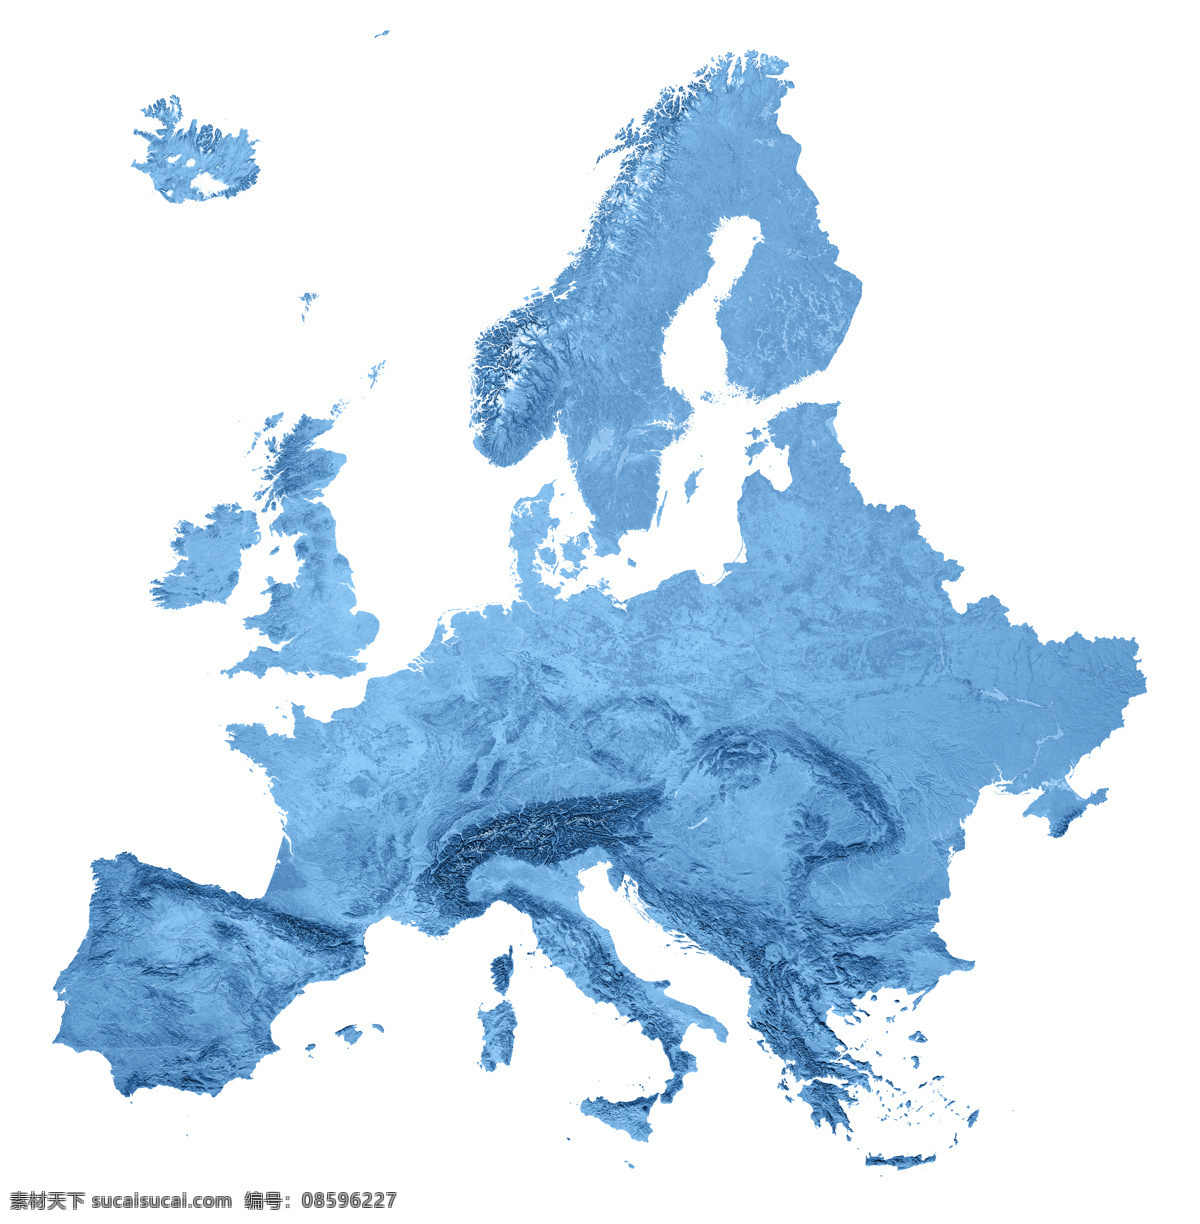 西欧 地图 西欧地图 3d渲染地图 蓝色地图 其他类别 环境家居